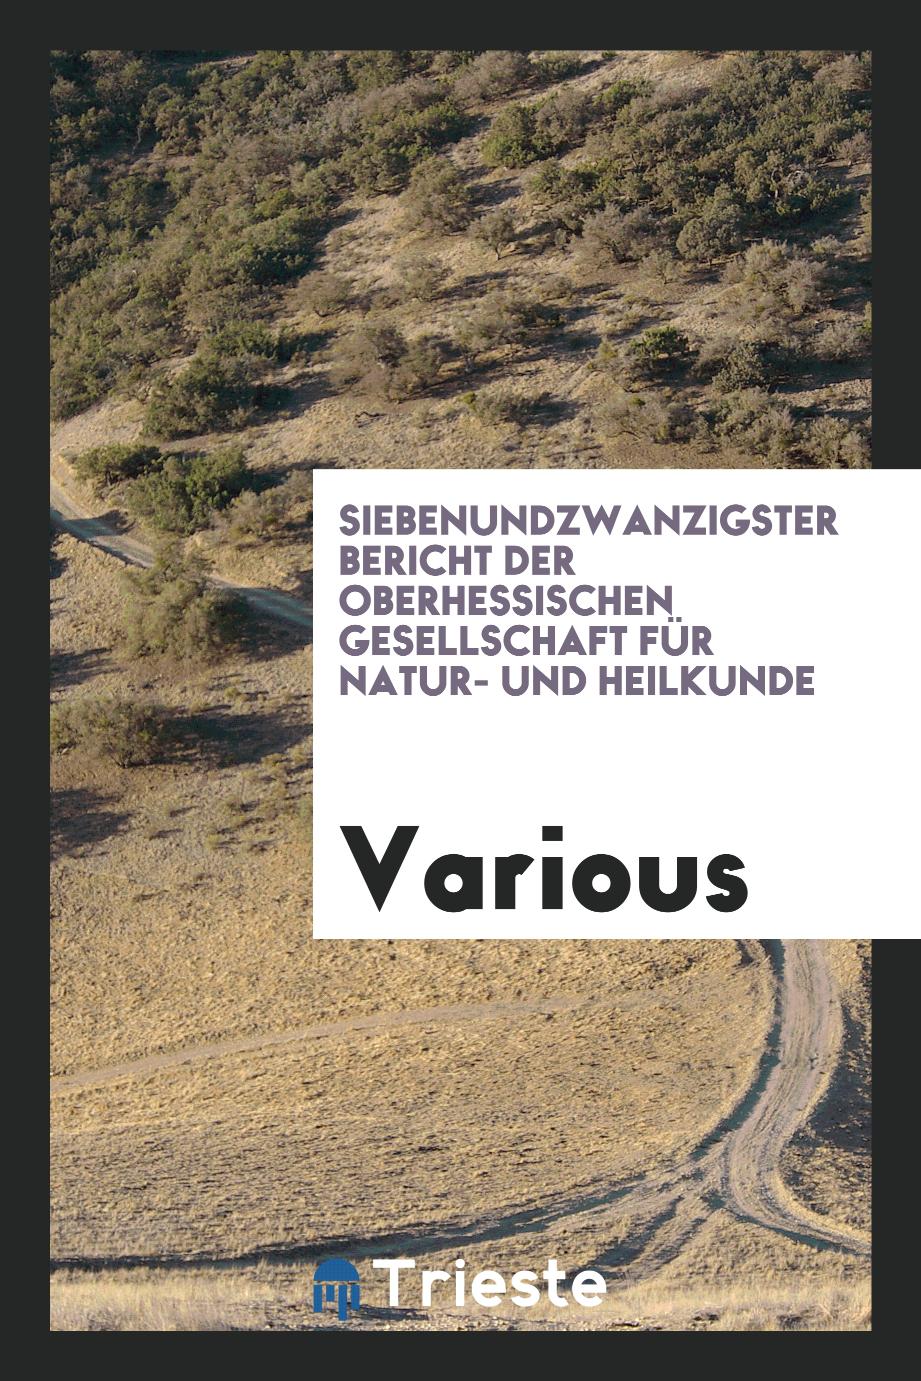 Siebenundzwanzigster Bericht der Oberhessischen Gesellschaft für Natur- und Heilkunde